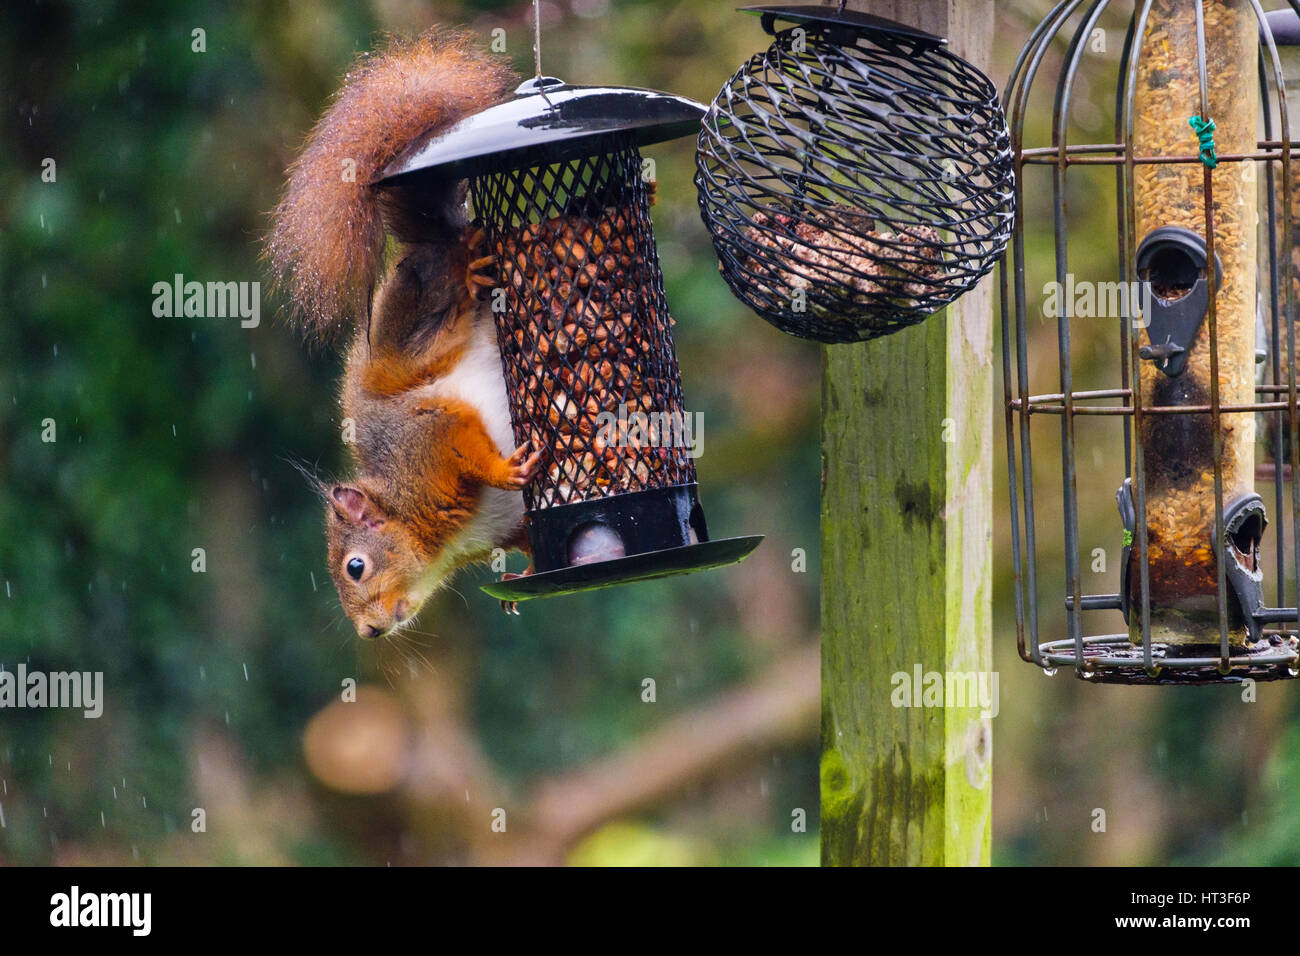 Una ardilla roja (Sciurus vulgaris) come cacahuetes por una ardilla-Prueba del alimentador de semilla colgando de un ave de tabla en un jardín interno. Anglesey Gales UK Foto de stock